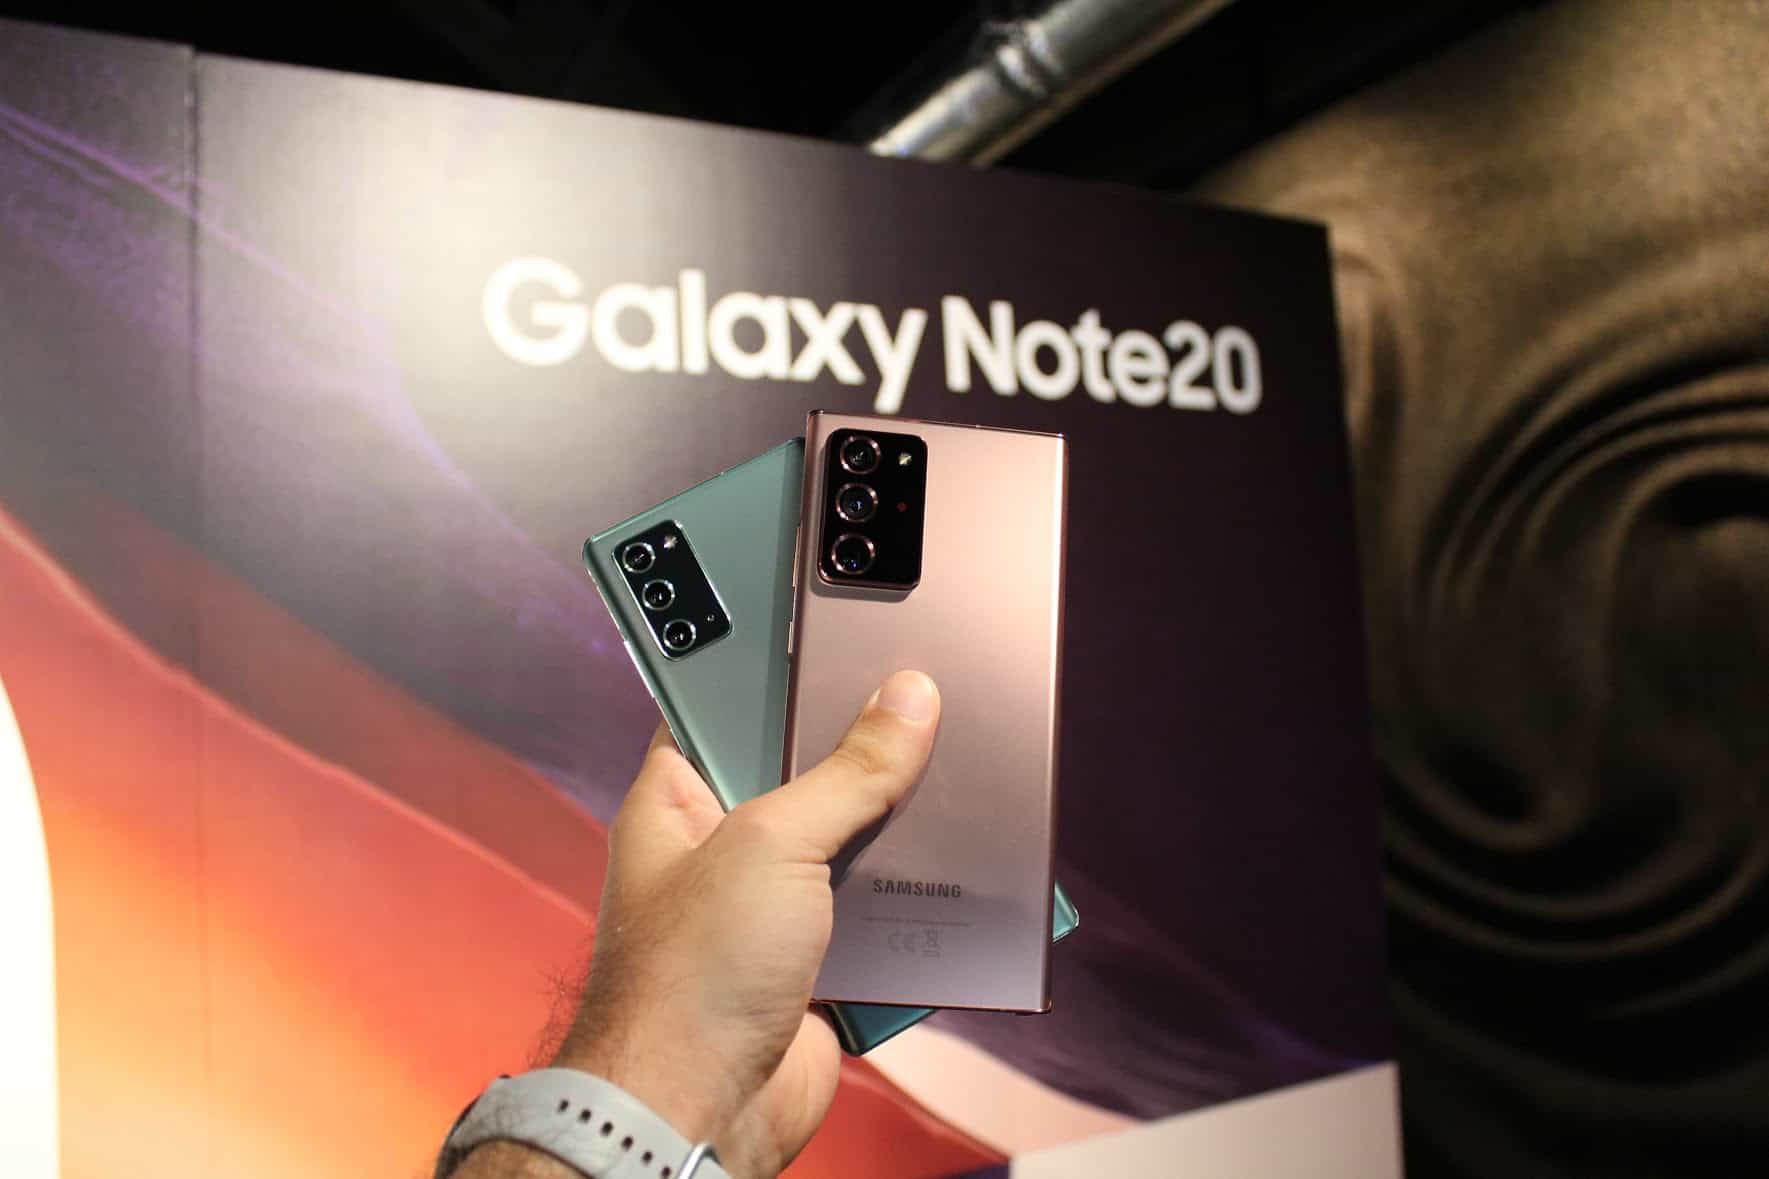 السوق يريد آخر Galaxy Note!  والآن سامسونج؟